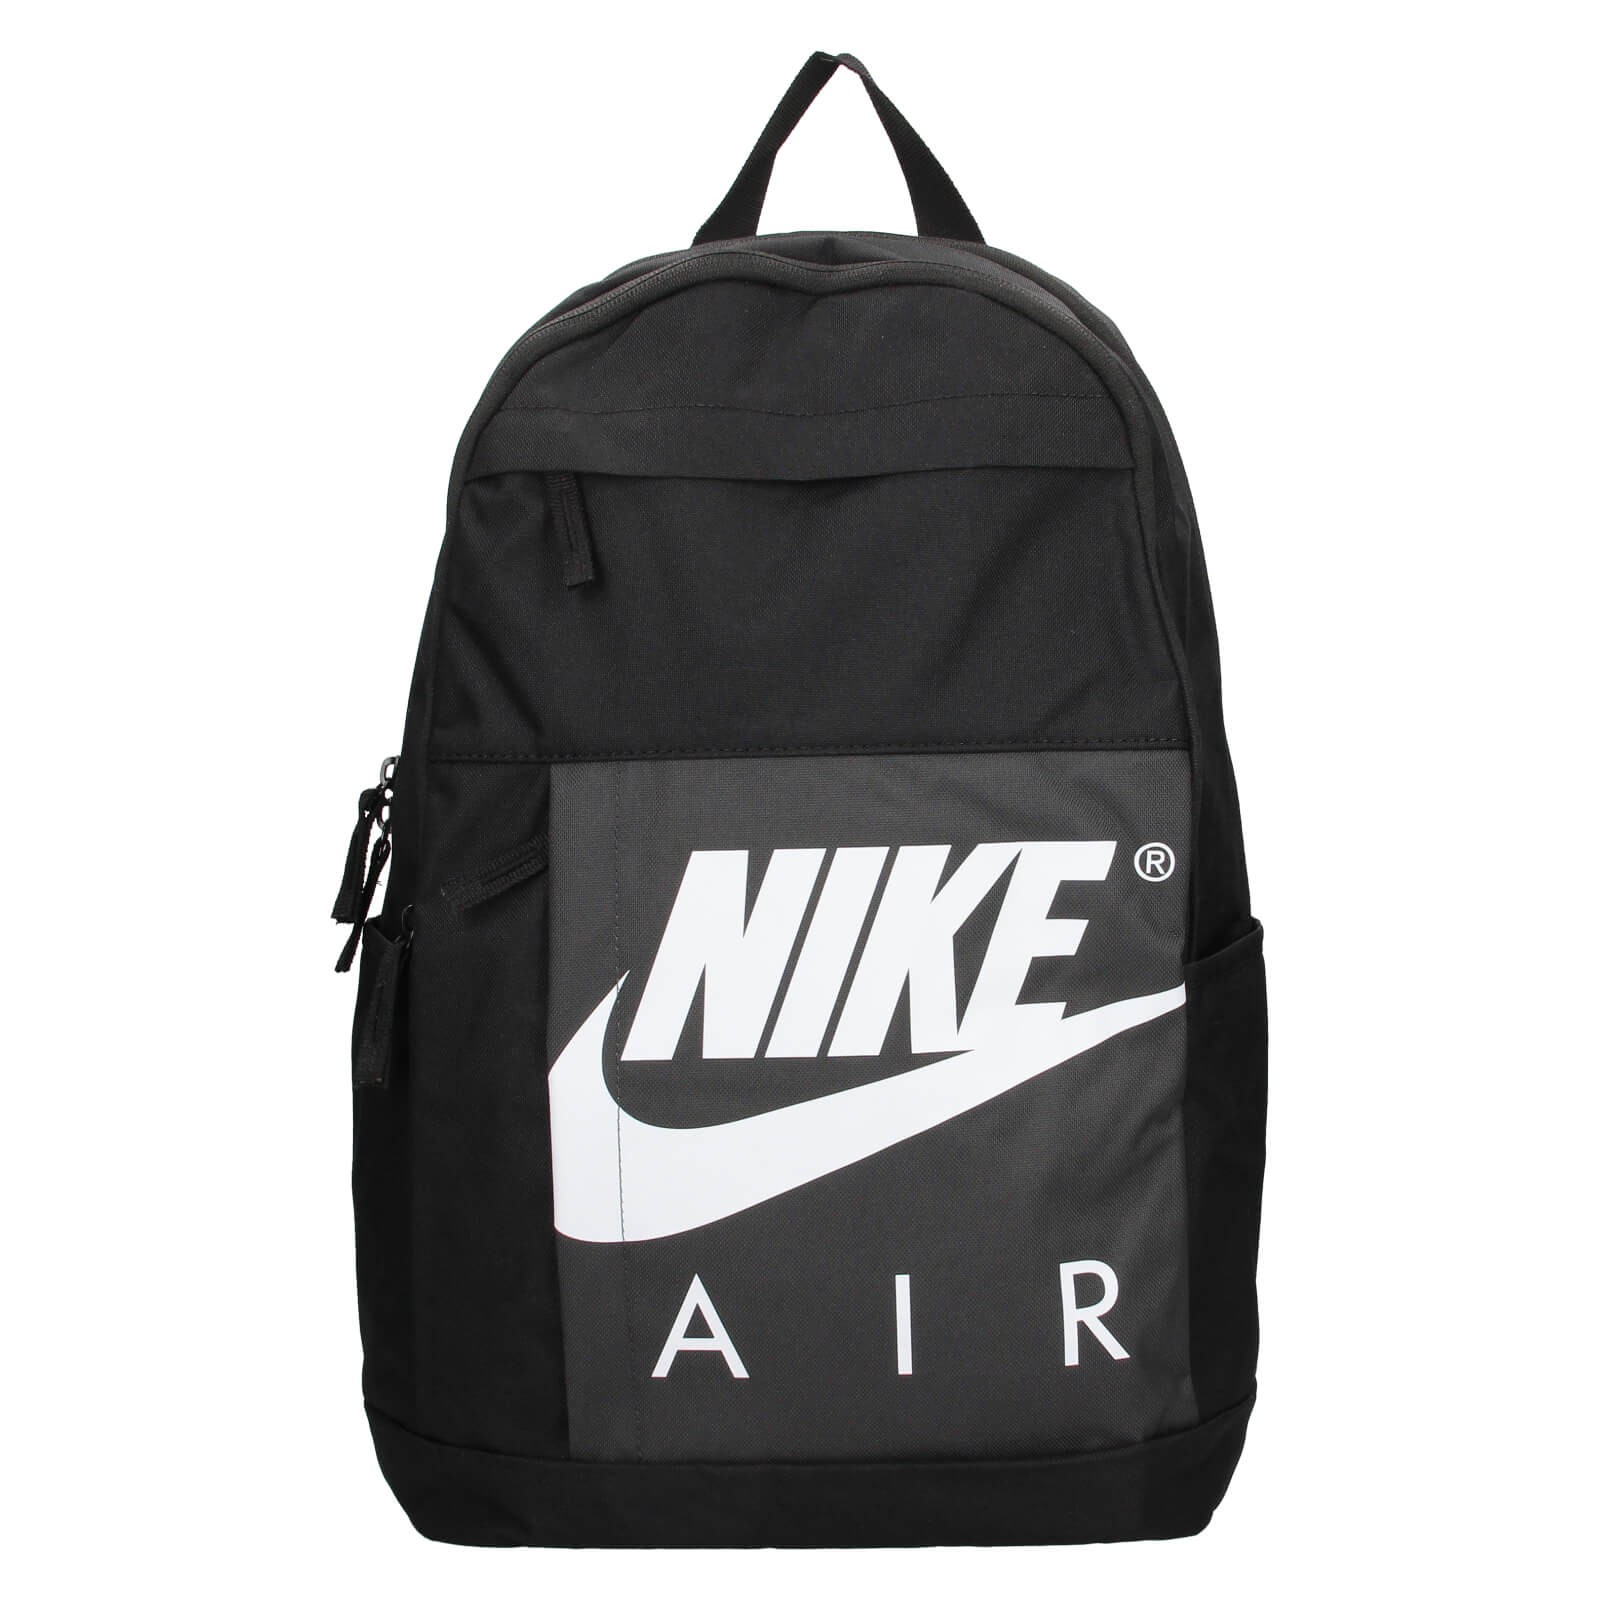 Nike Daryl hátizsák - Fekete